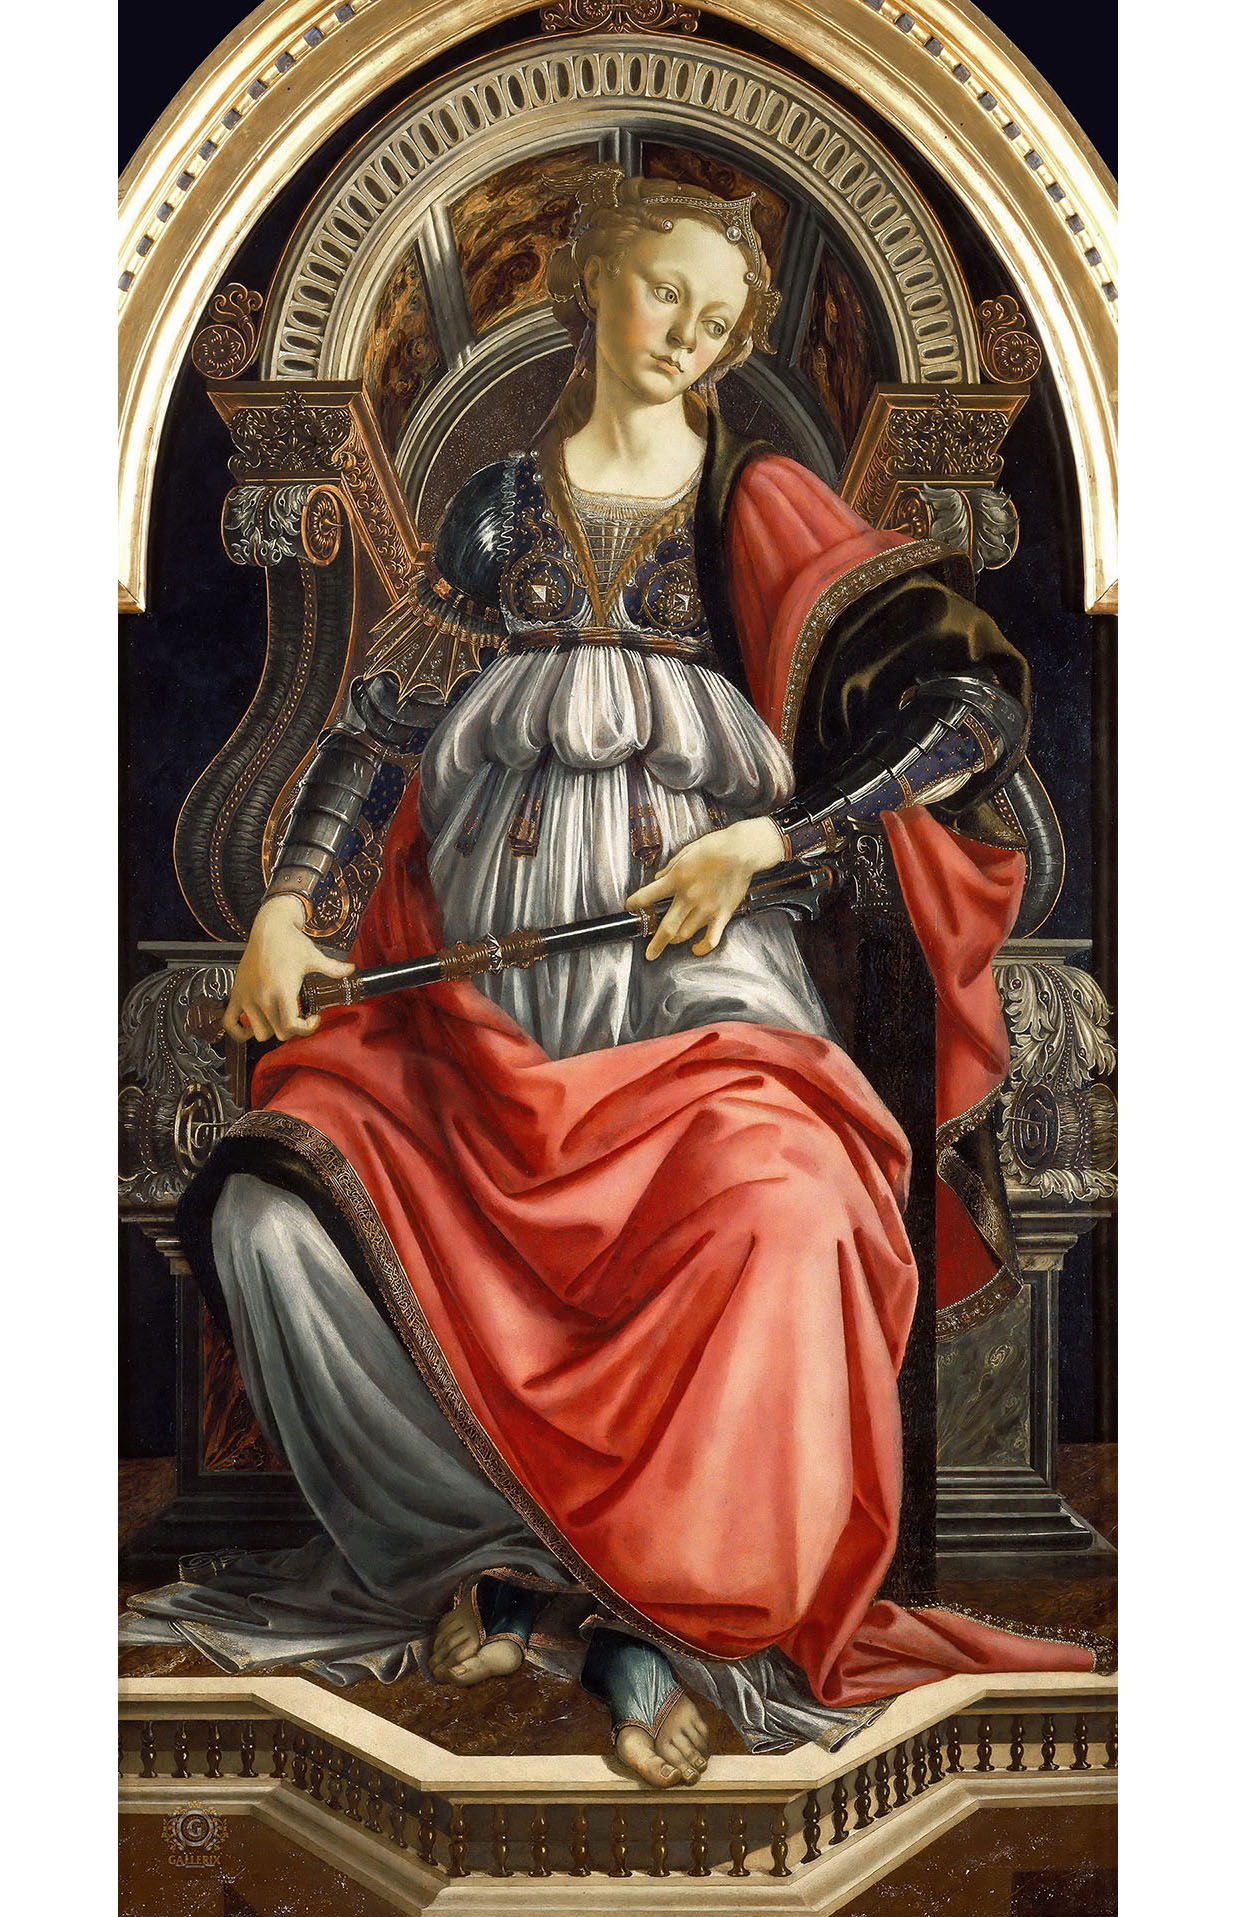 Сандро Боттичелли. "Аллегория силы". 1469-1470. Галлерея Уффици, Флоренция.